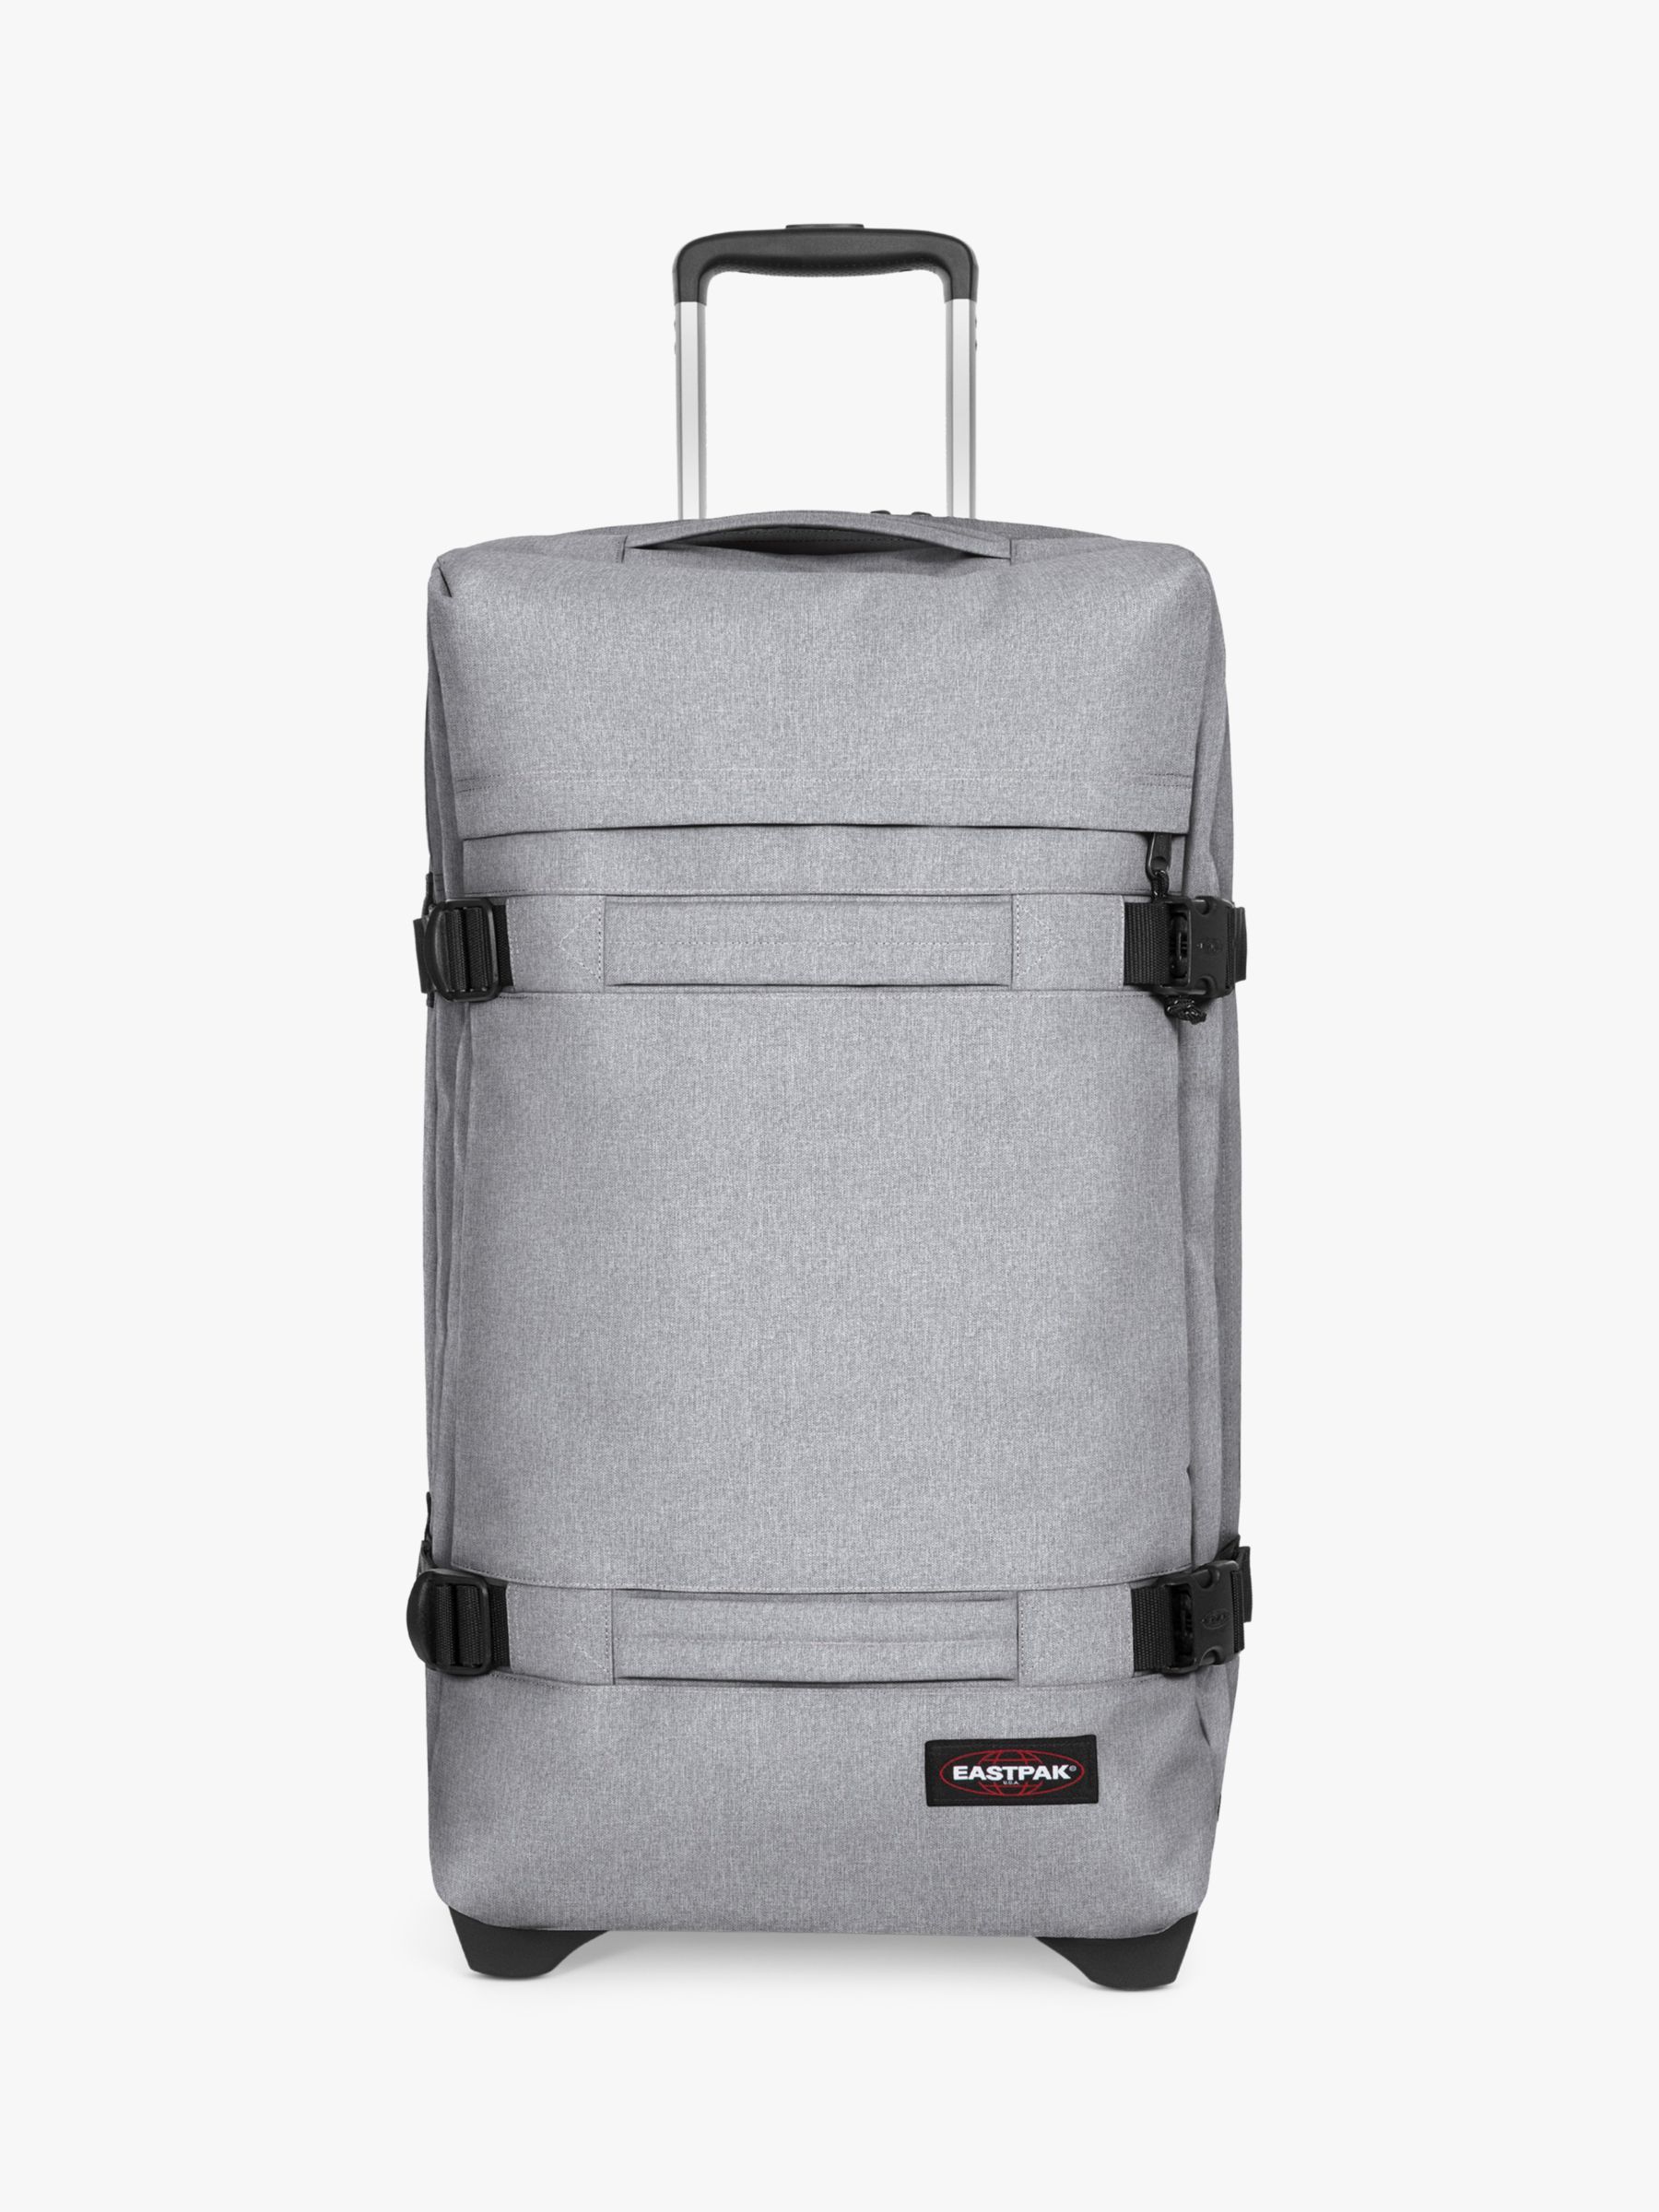 Eastpak Transit'R 2-Wheel 79cm Large Suitcase, Sunday Grey